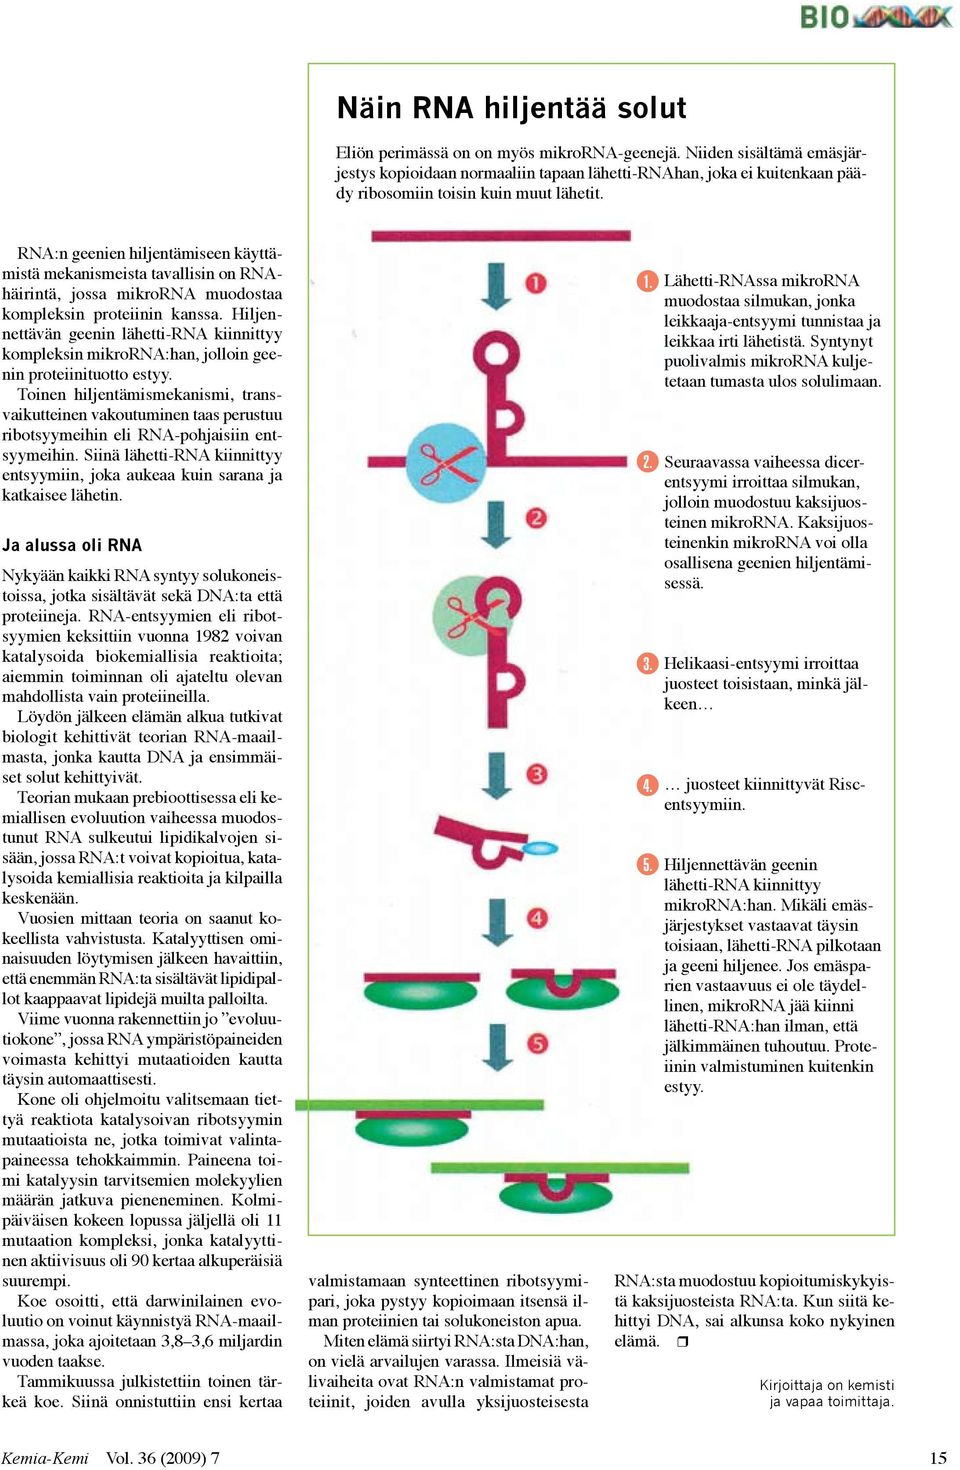 RNA:n geenien hiljentämiseen käyttämistä mekanismeista tavallisin on RNAhäirintä, jossa mikrorna muodostaa kompleksin proteiinin kanssa.